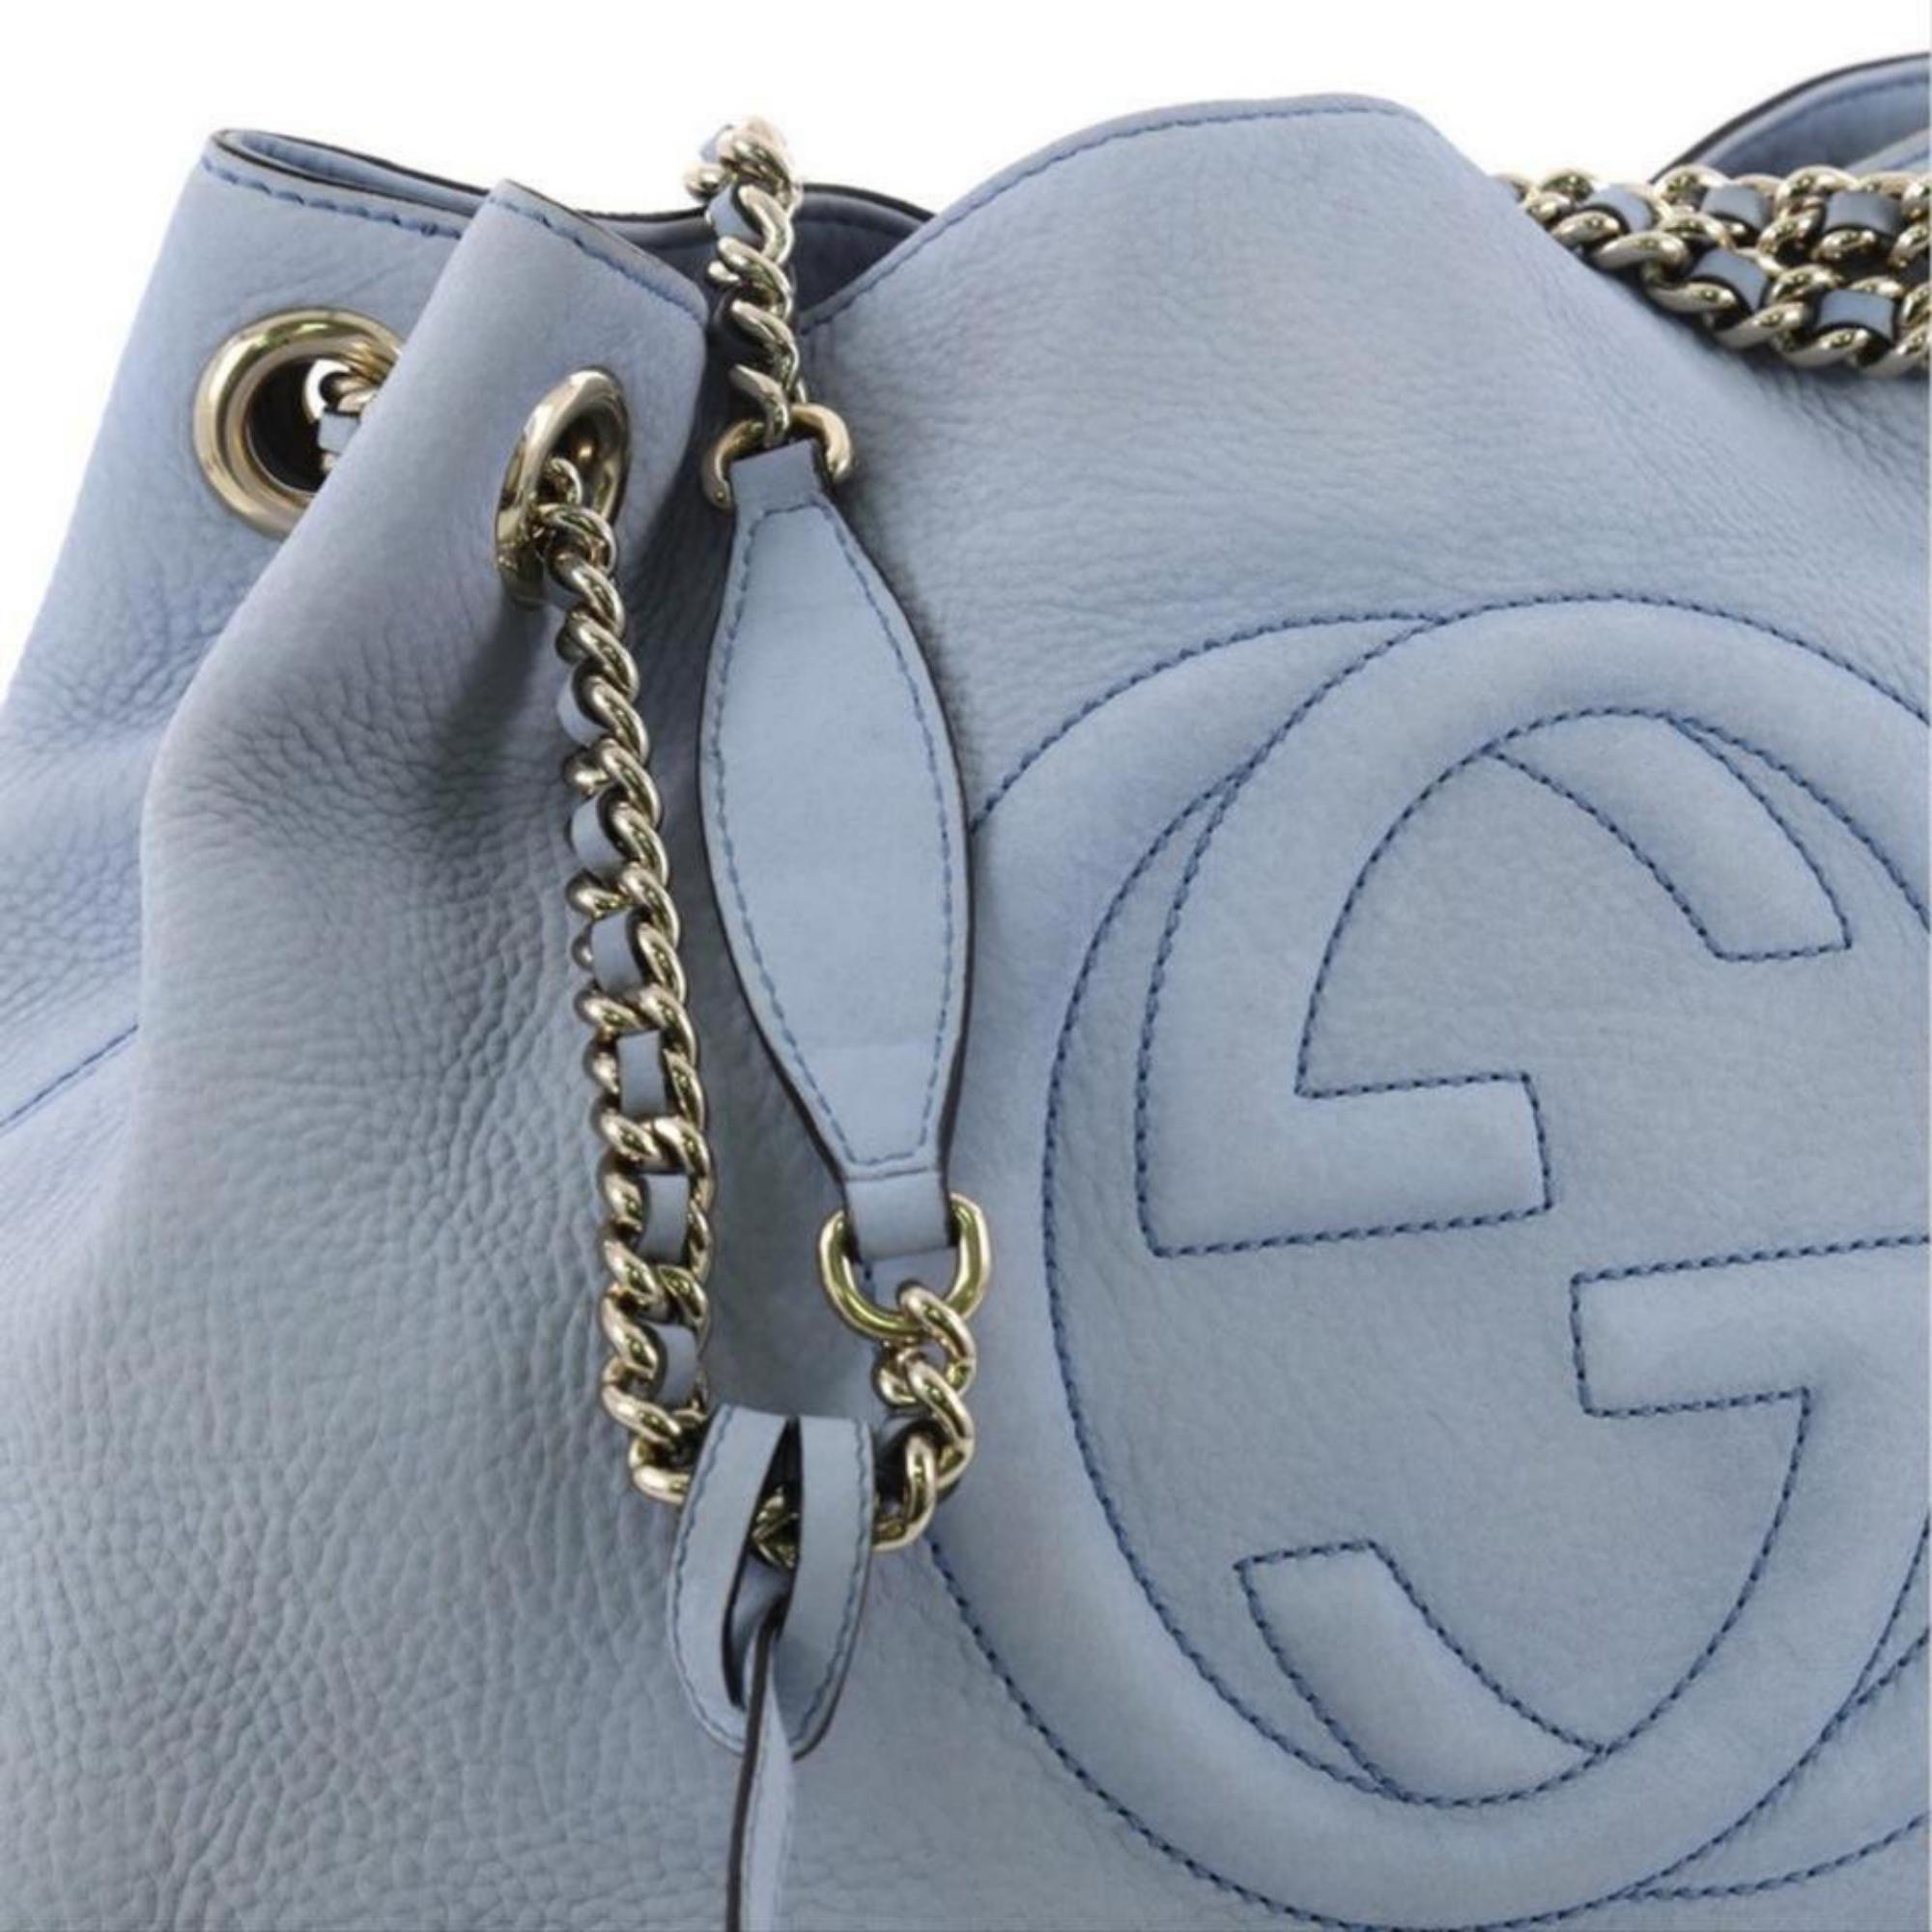 Gucci Soho Fringe Tassel Chain Tote 869083 Light Blue Leather Shoulder Bag For Sale 5